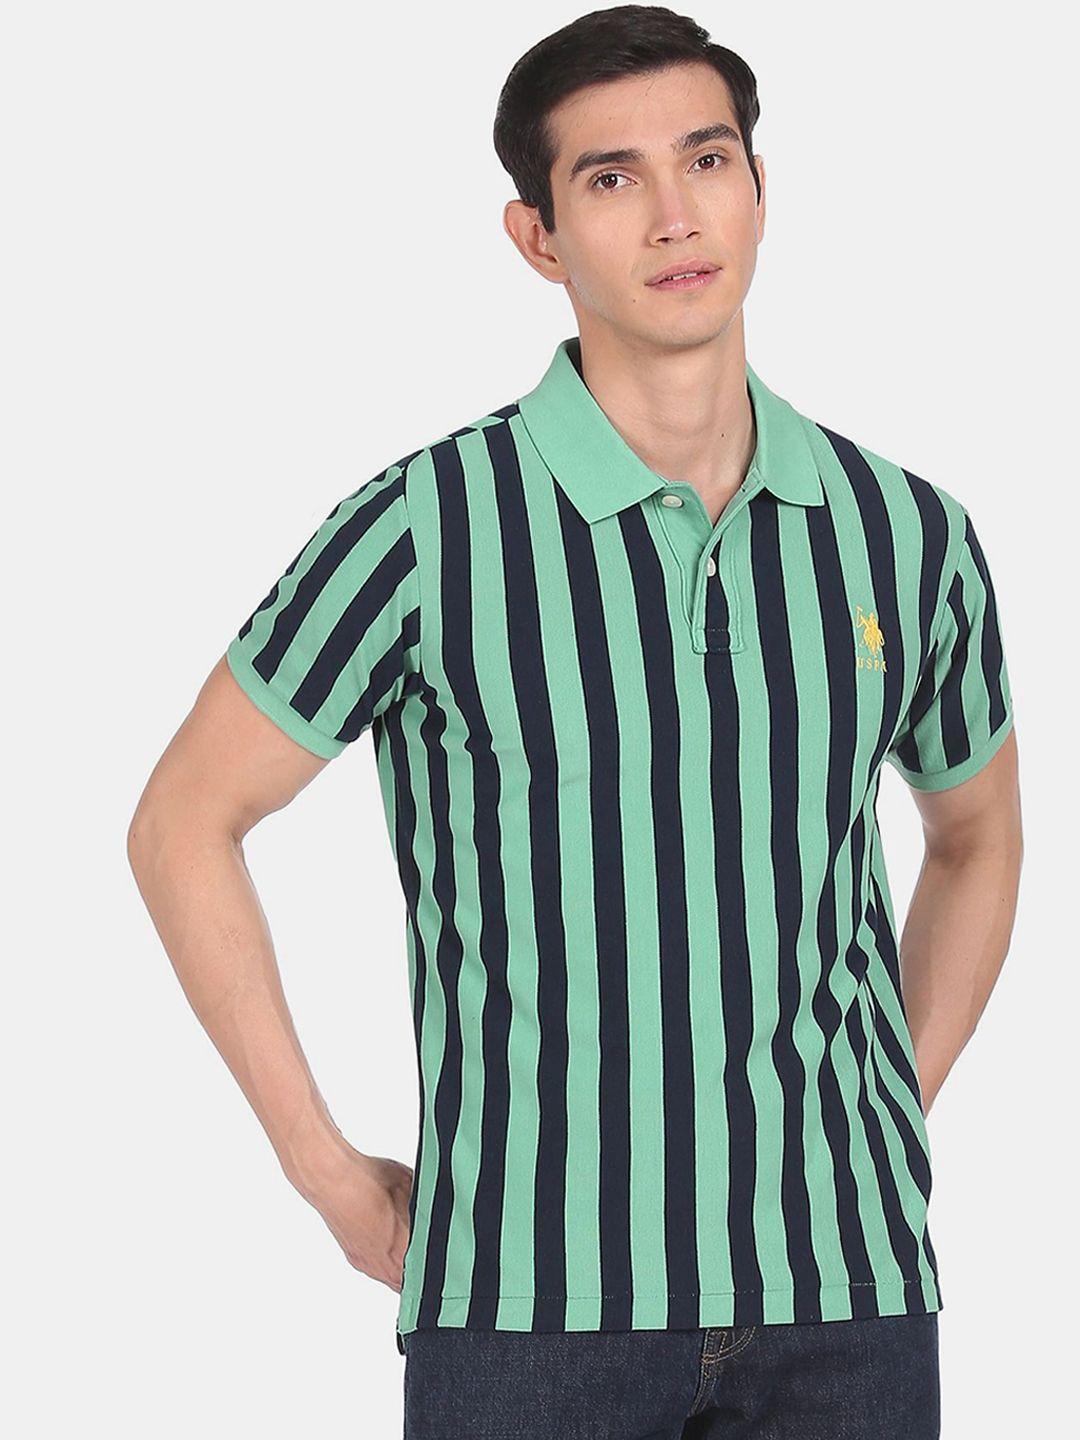 u s polo assn men sea green & navy blue striped polo collar cotton t-shirt